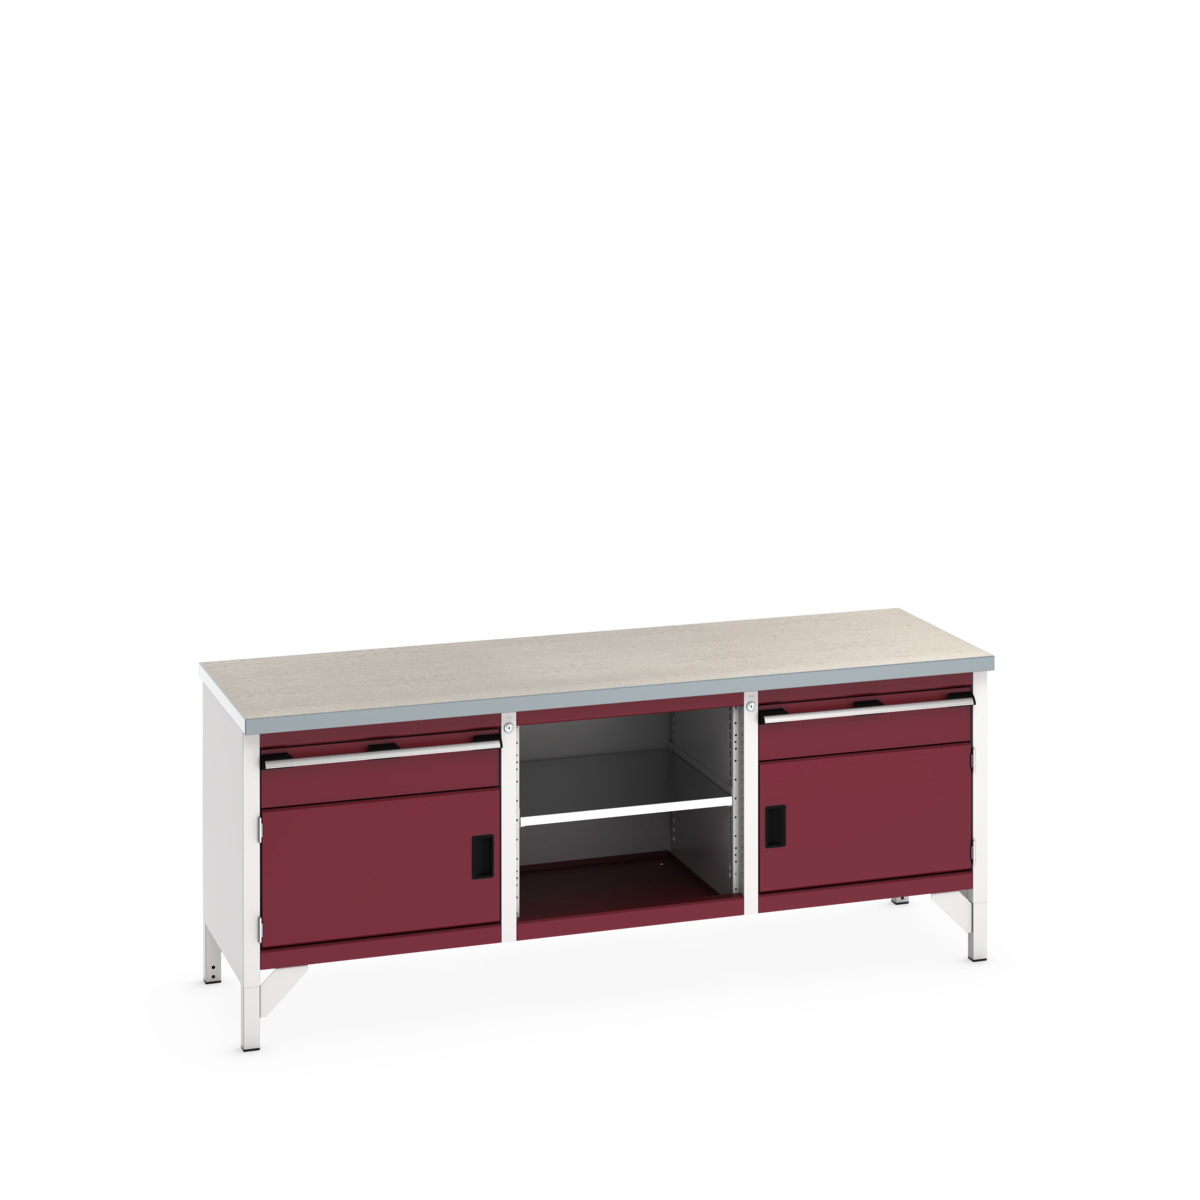 41002054.24V - cubio storage bench (lino)